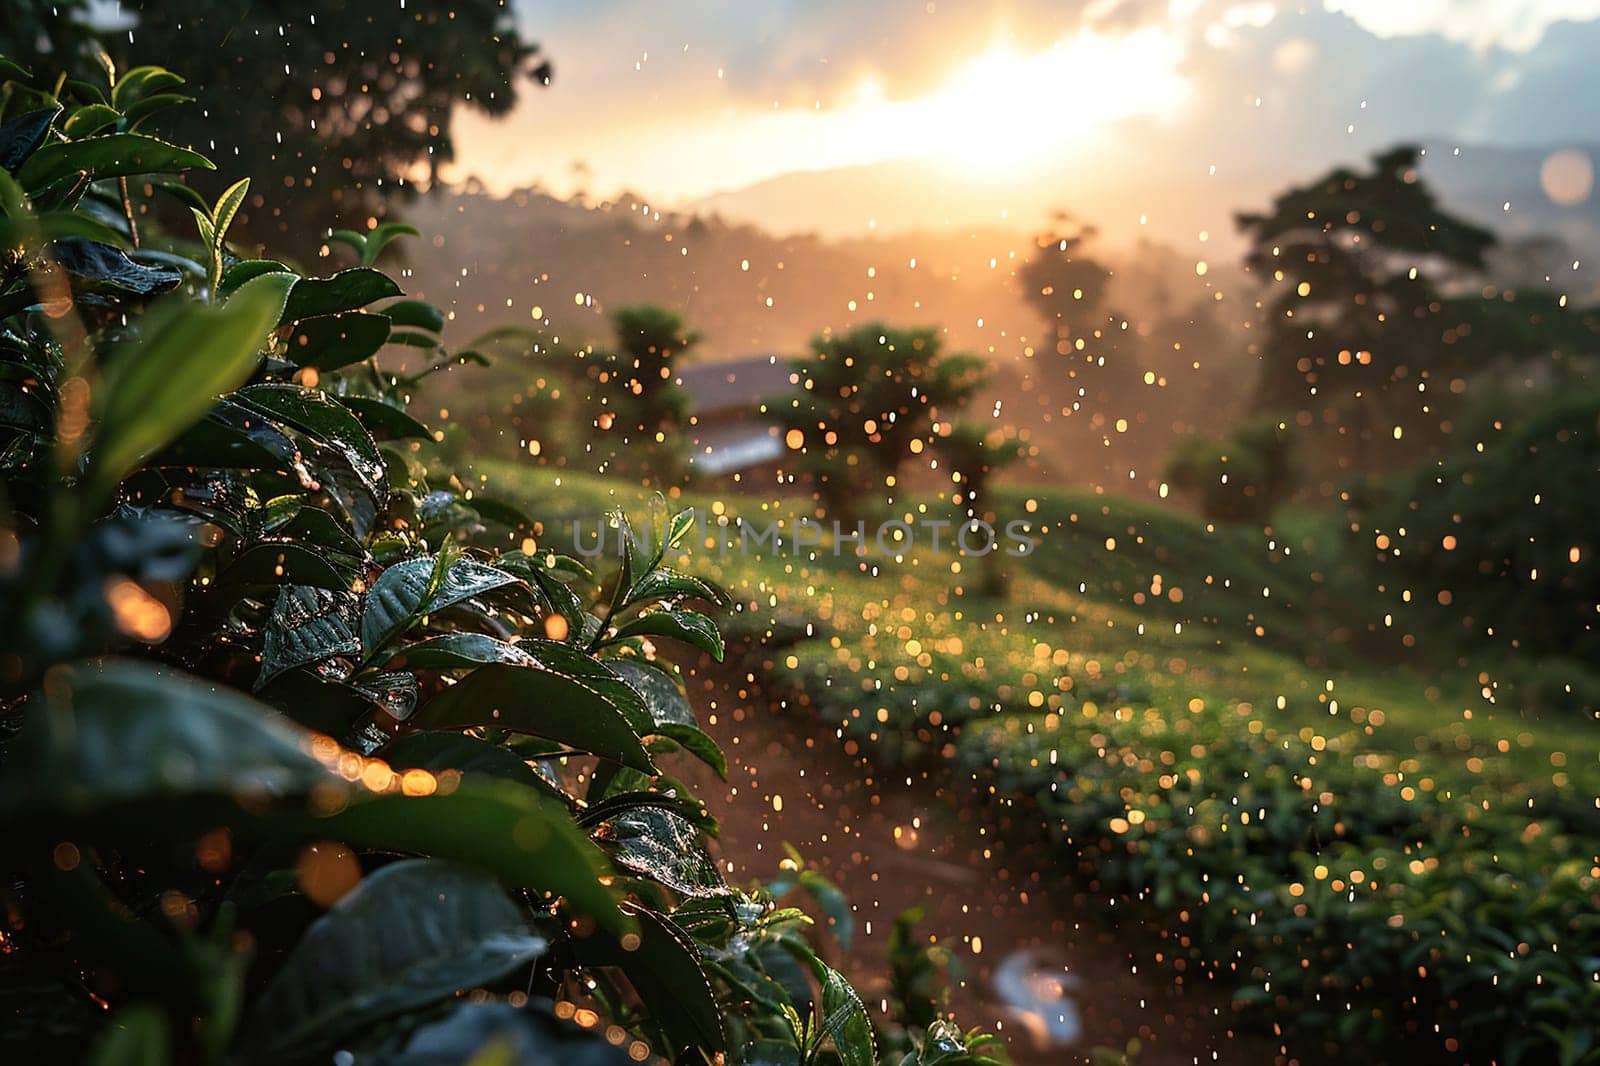 Rain over a large tea plantation.